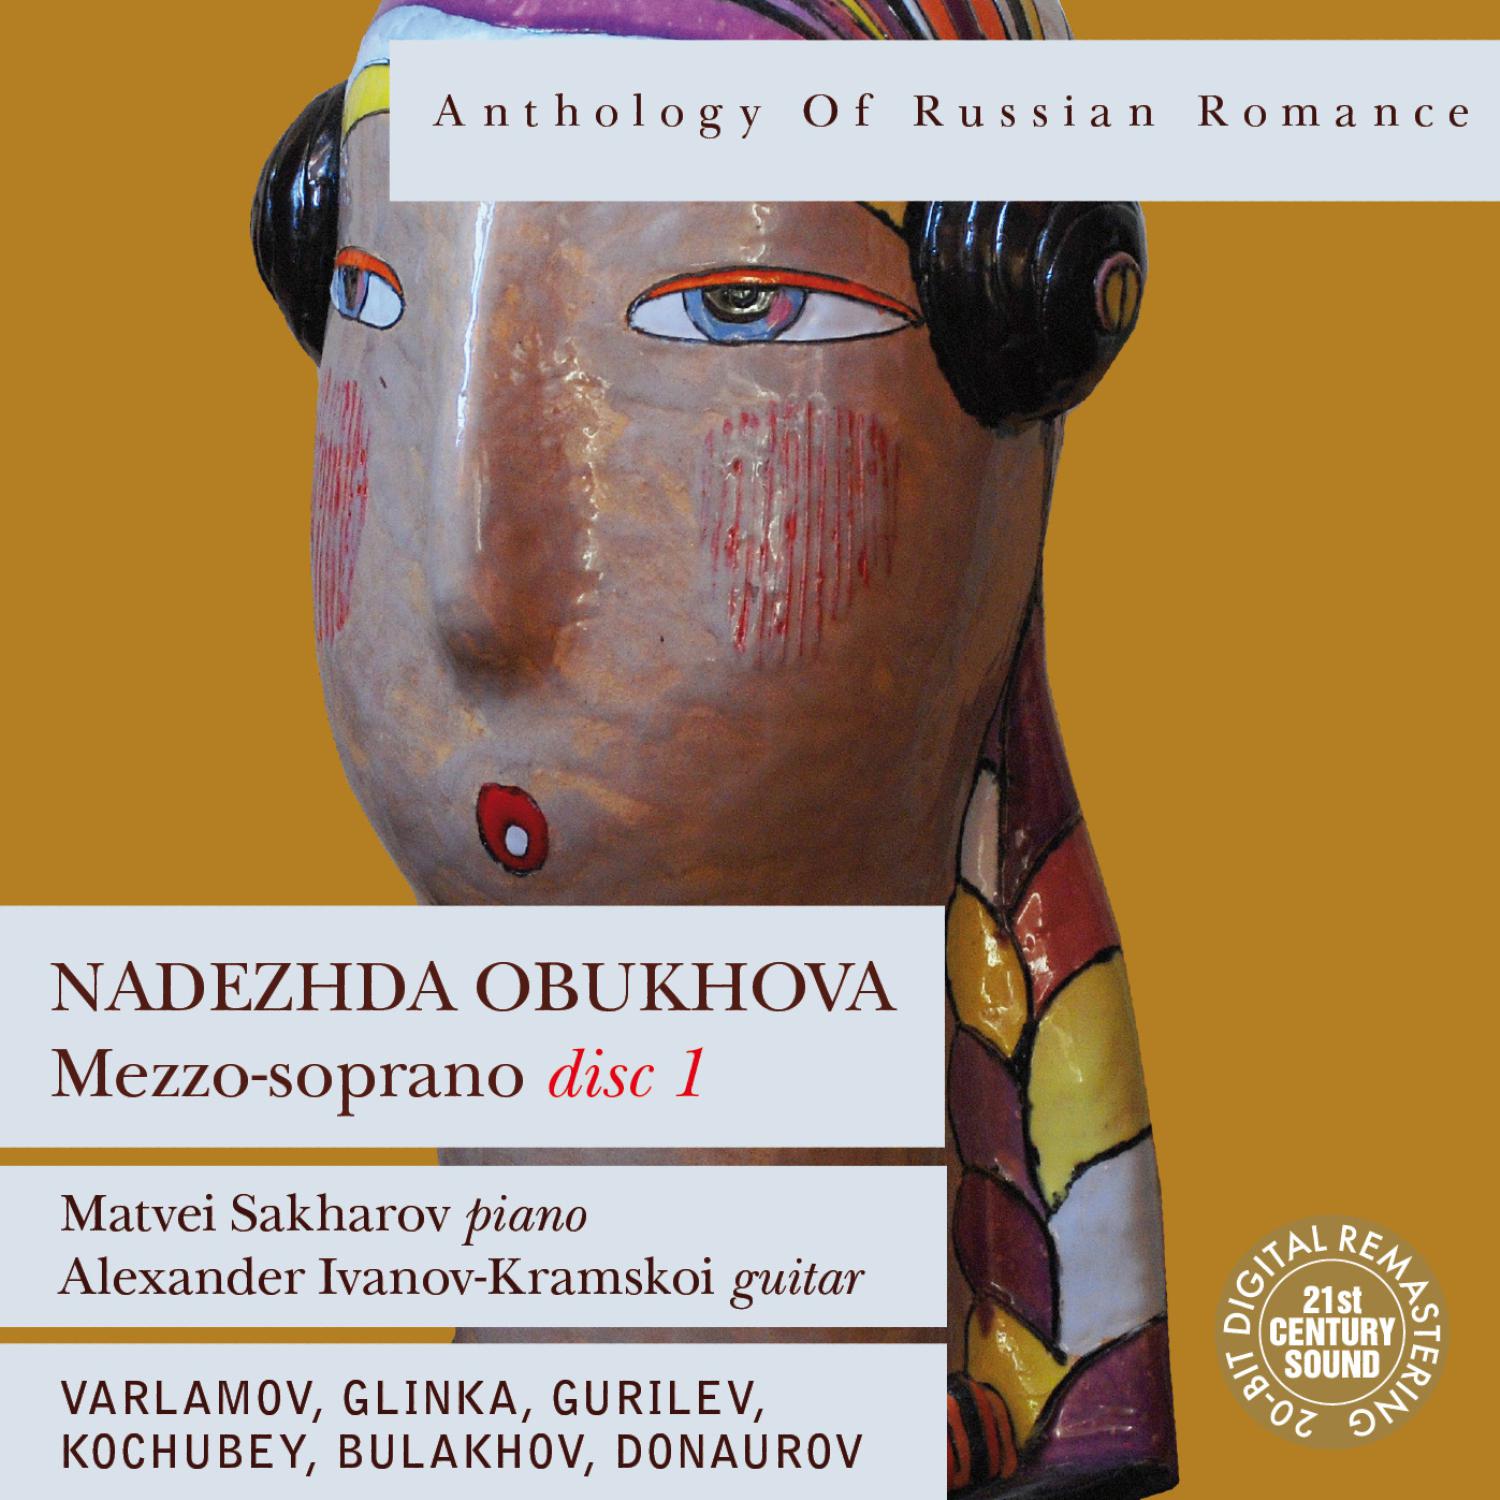 Nadezhda Obukhova - Matushka, Golubushka (My Dear Mother)